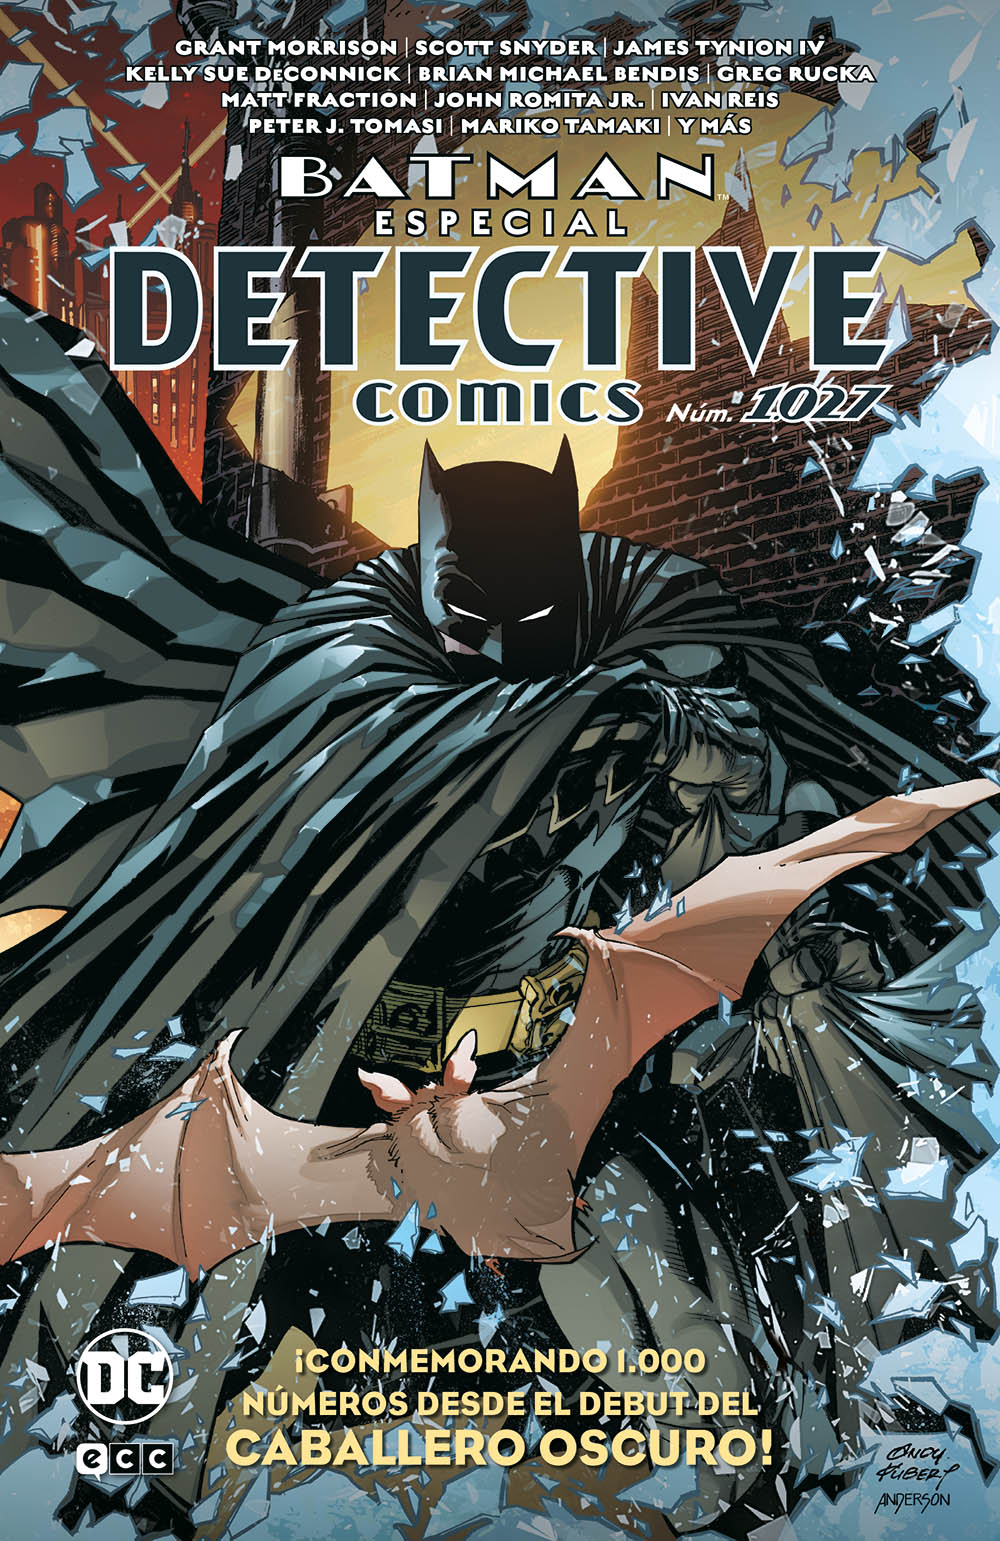 BATMAN: ESPECIAL DETECTIVE COMICS NÚM. 